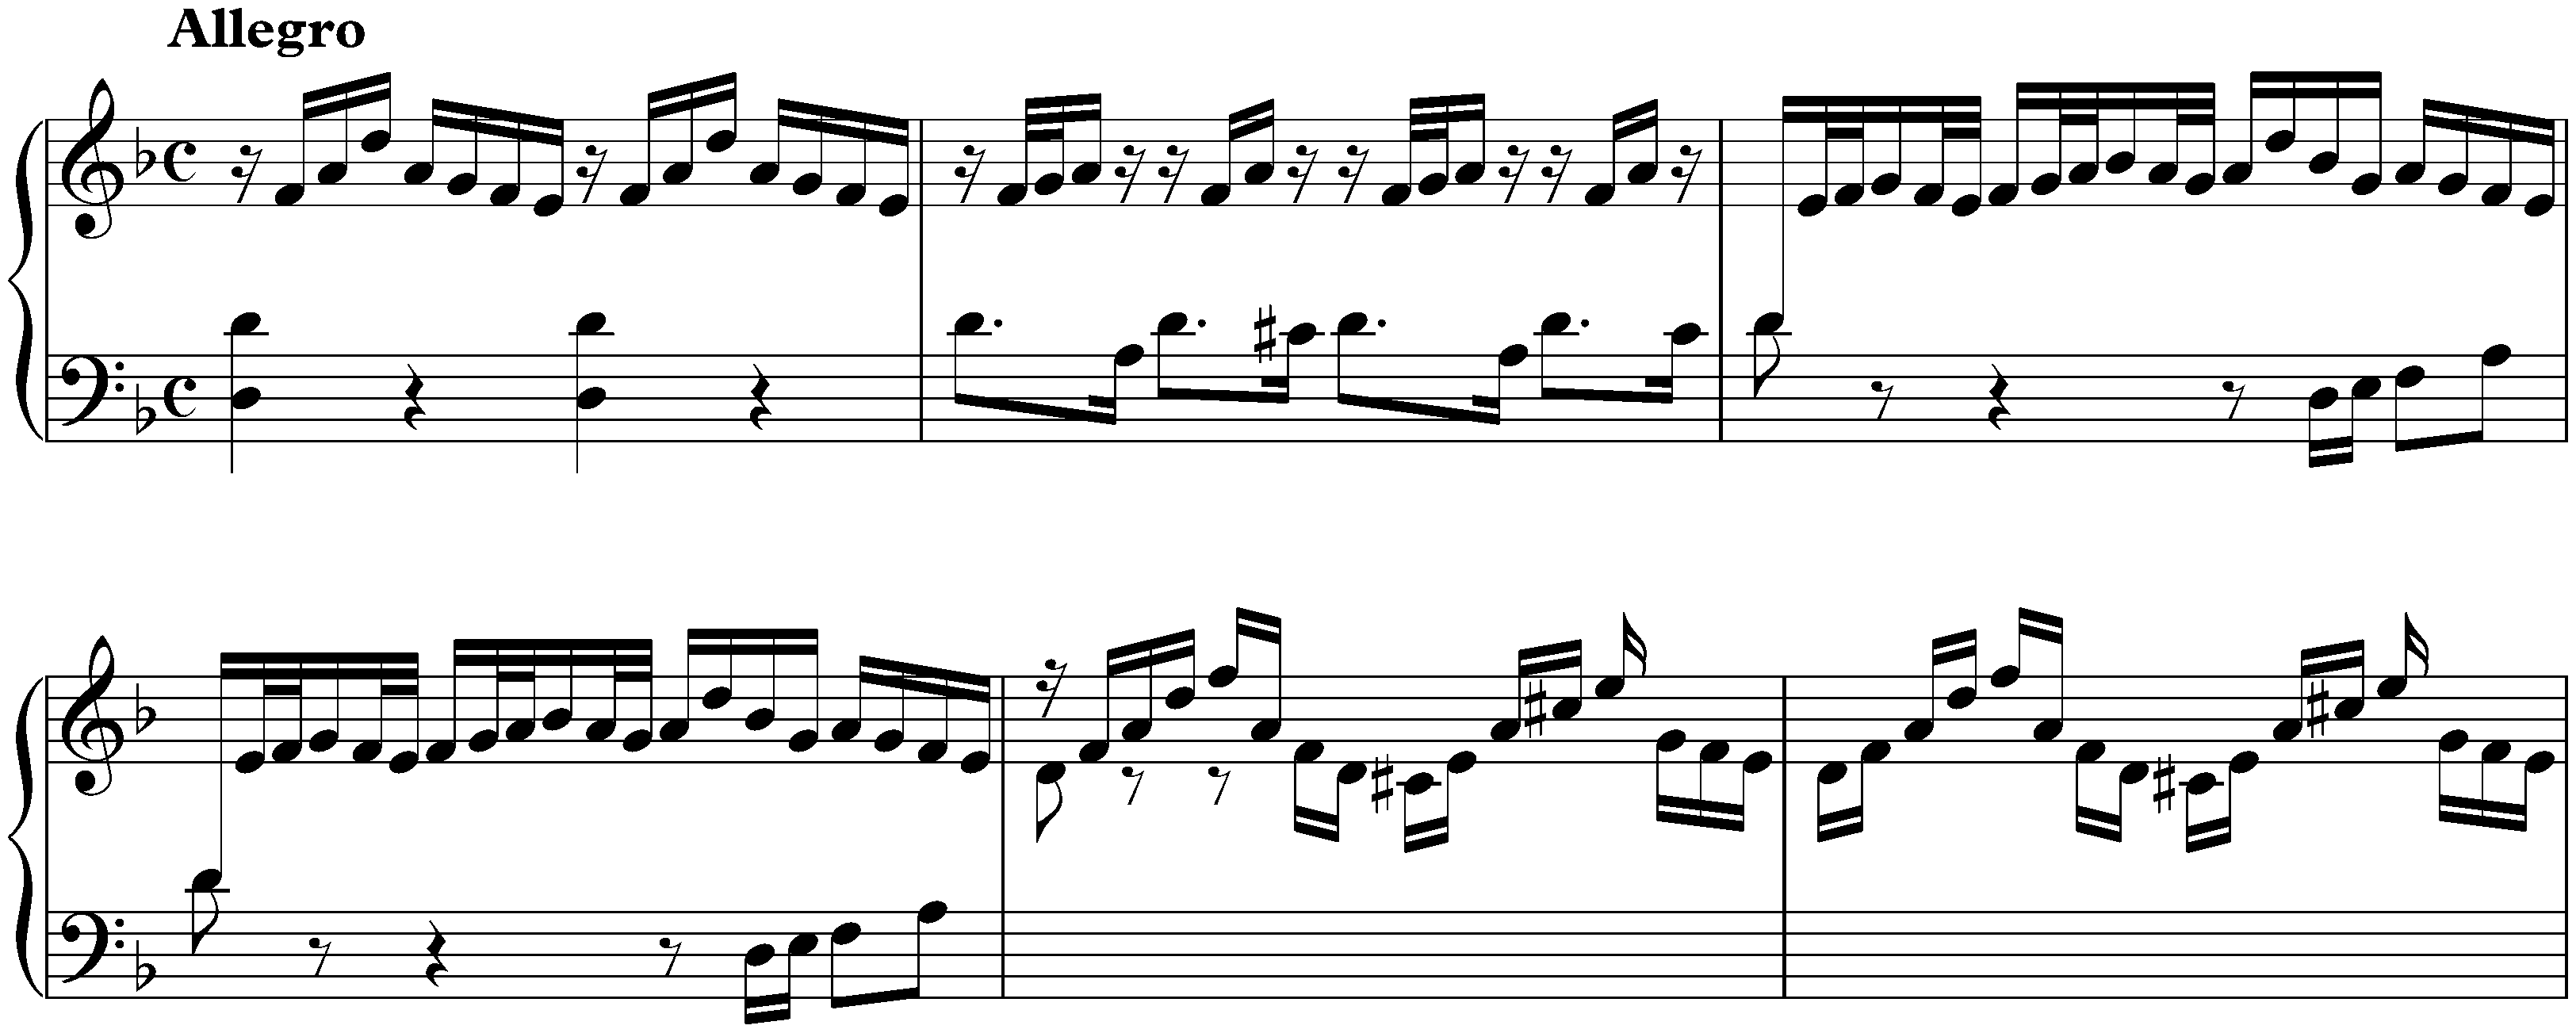 Sonata in D minor, BWV 964; 4. Allegro